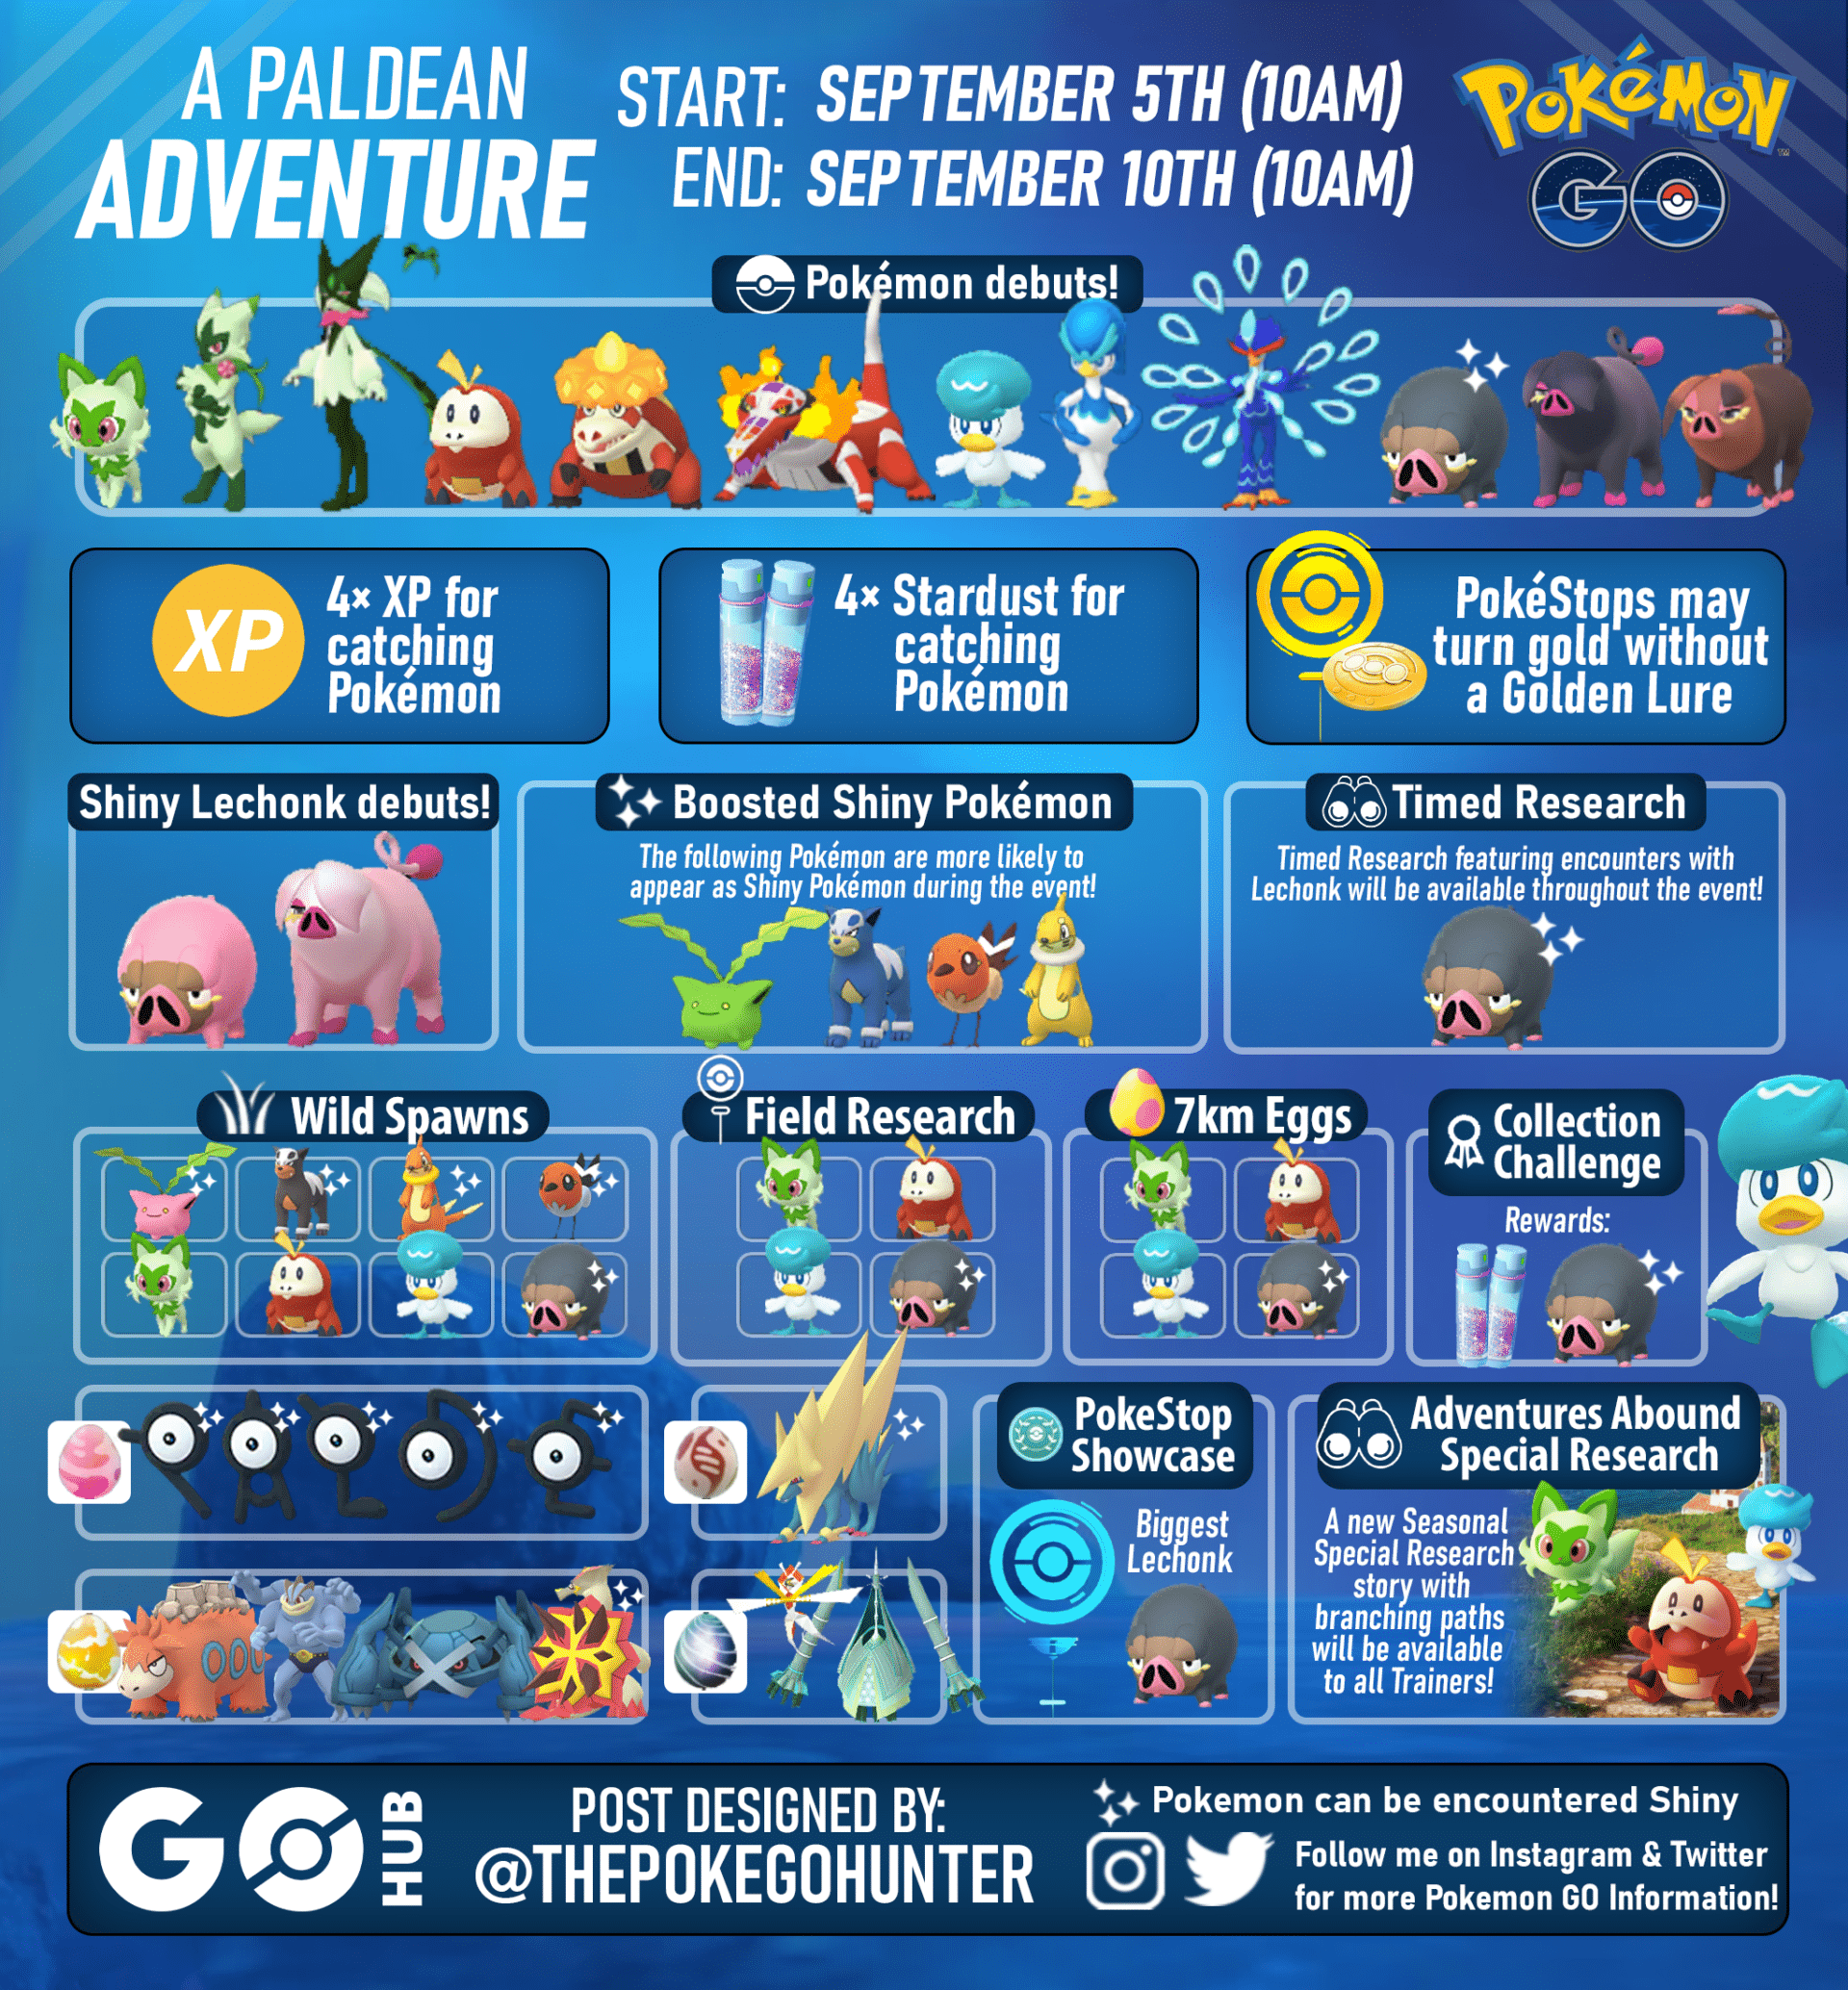 A Paldean Adventure Pokémon GO Event Guide Pokémon GO Hub